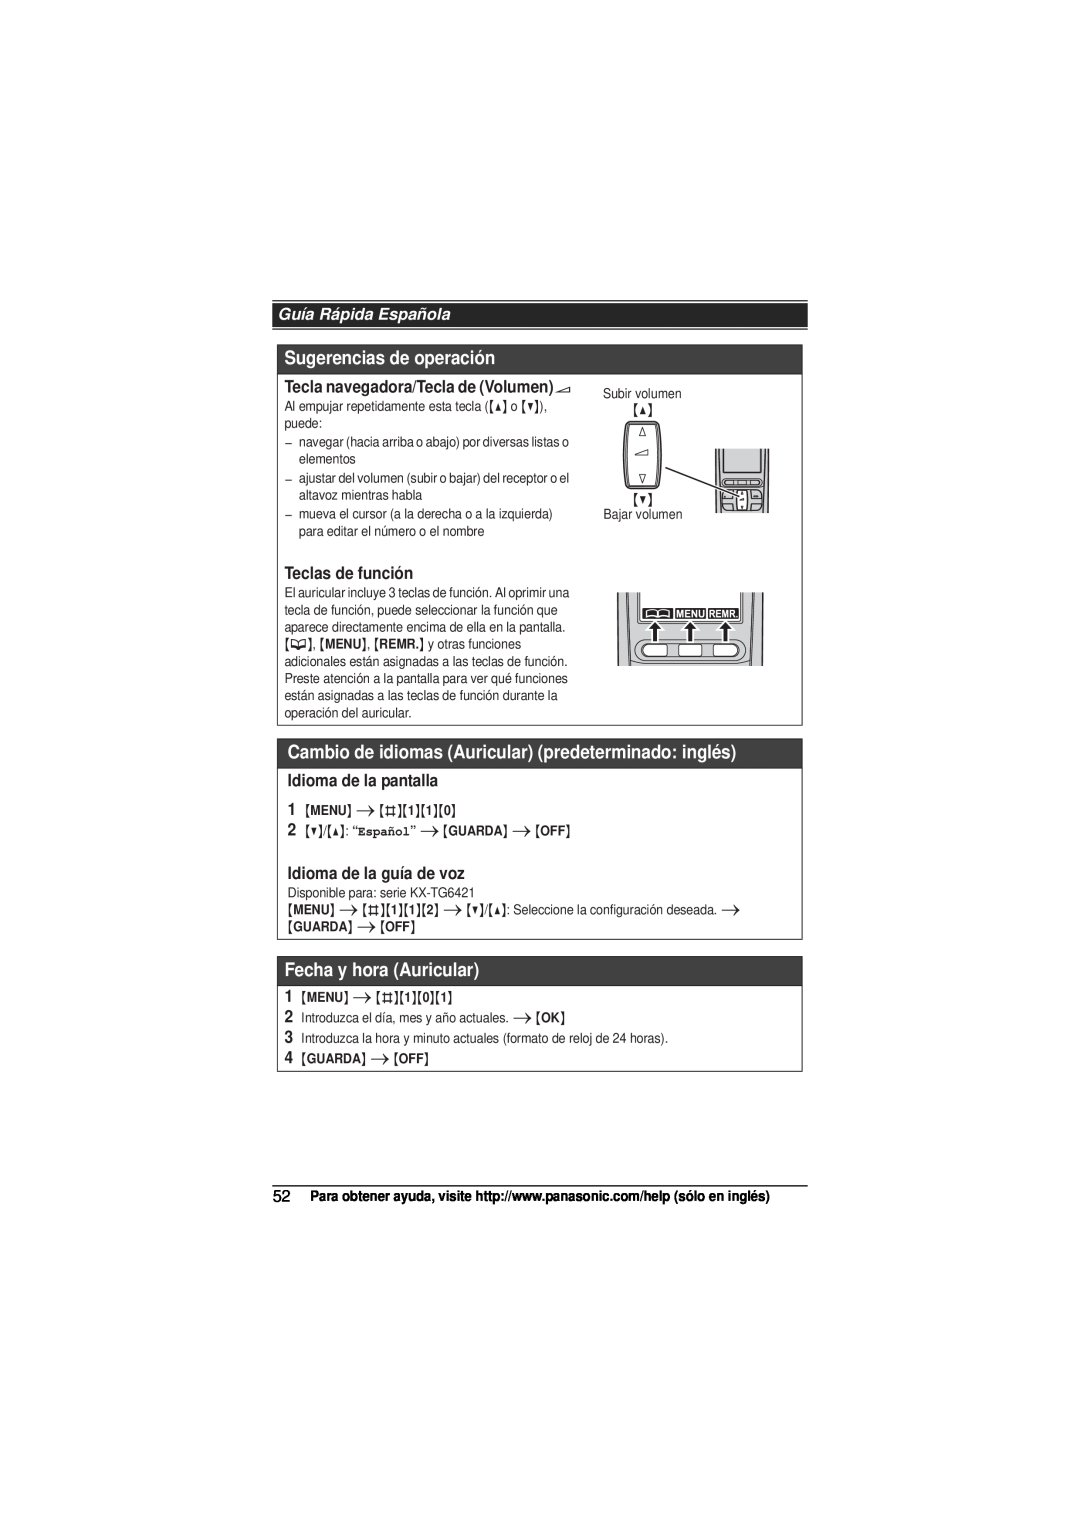 Panasonic KX-TG6413 Sugerencias de operación, Cambio de idiomas Auricular predeterminado inglés, Fecha y hora Auricular 